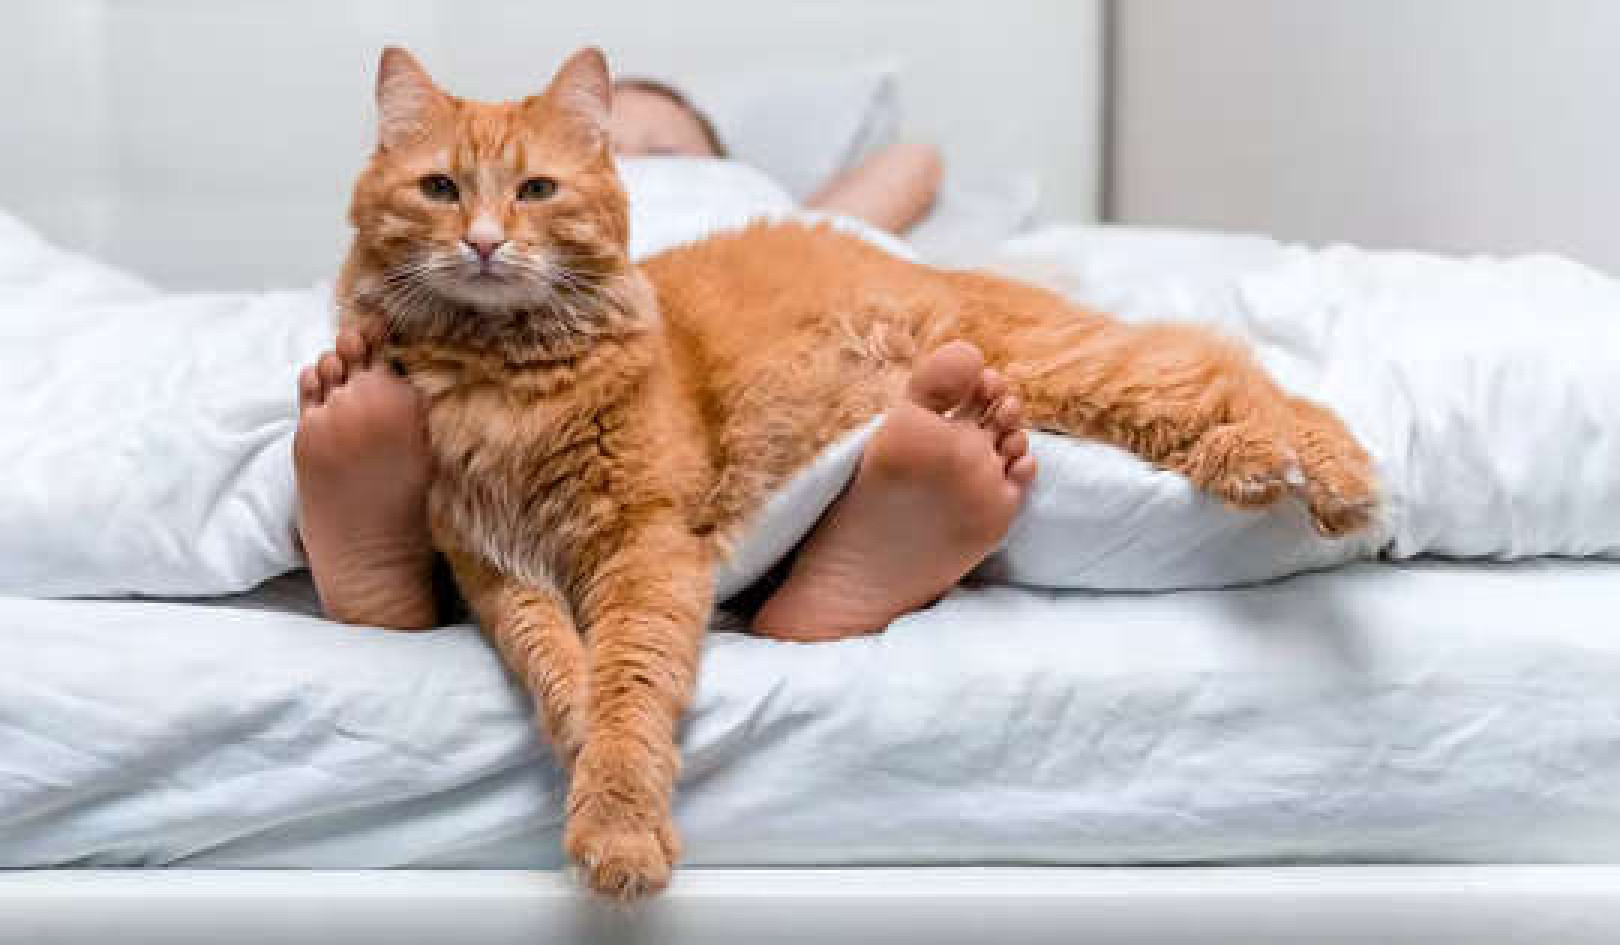 แมวปลุกคุณให้ตื่นเช้า? นี่คือสิ่งที่คุณสามารถทำได้เกี่ยวกับมัน